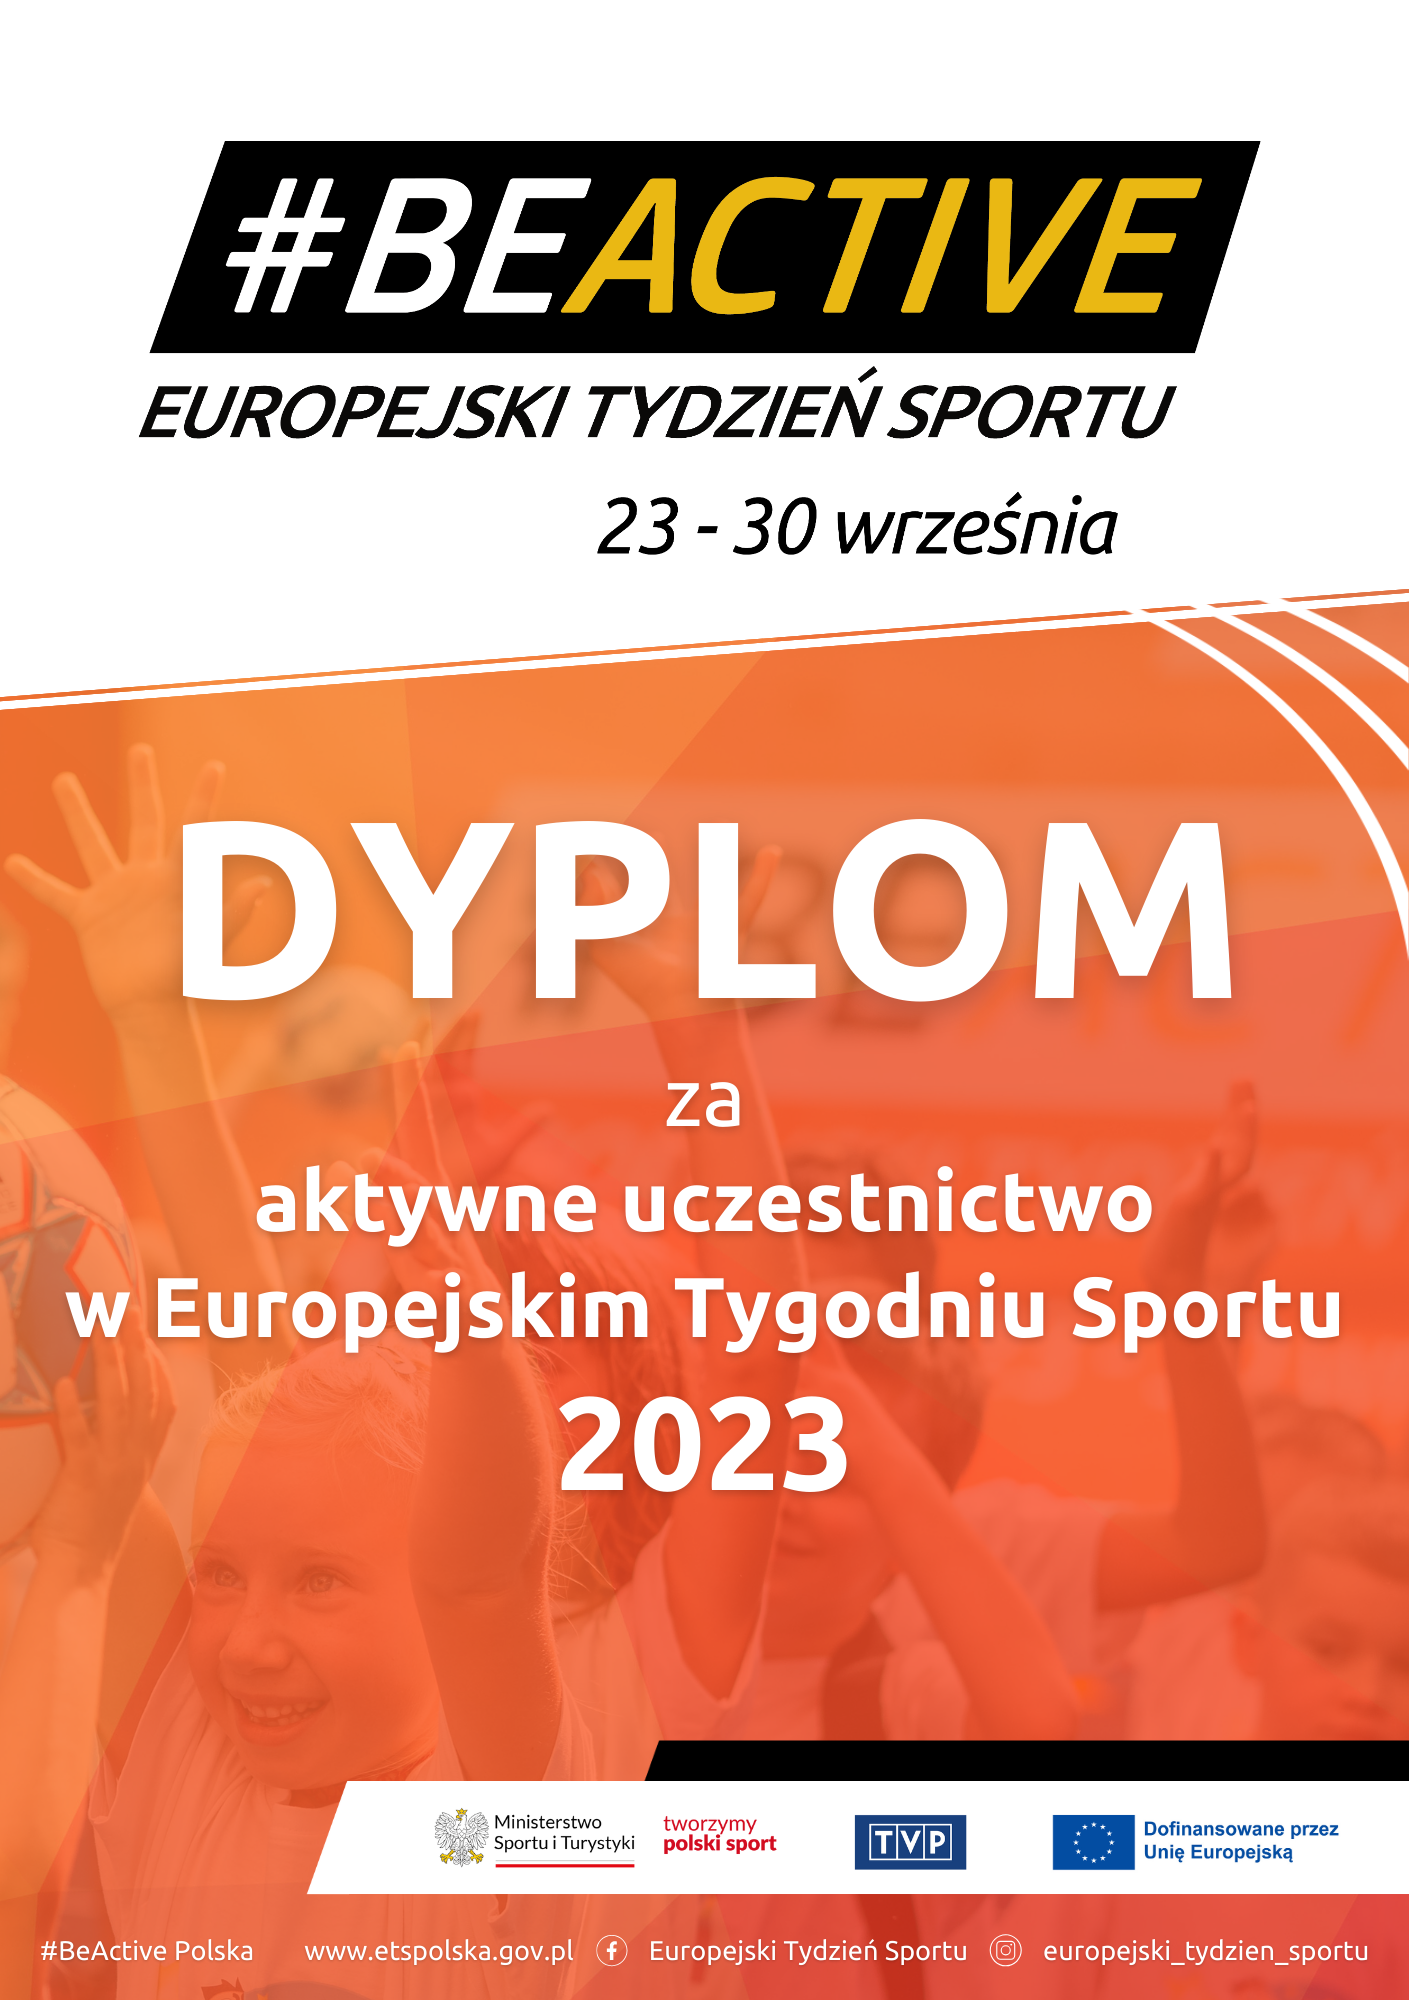 Europejski Tydzień Sportu - # BE ACTIVE